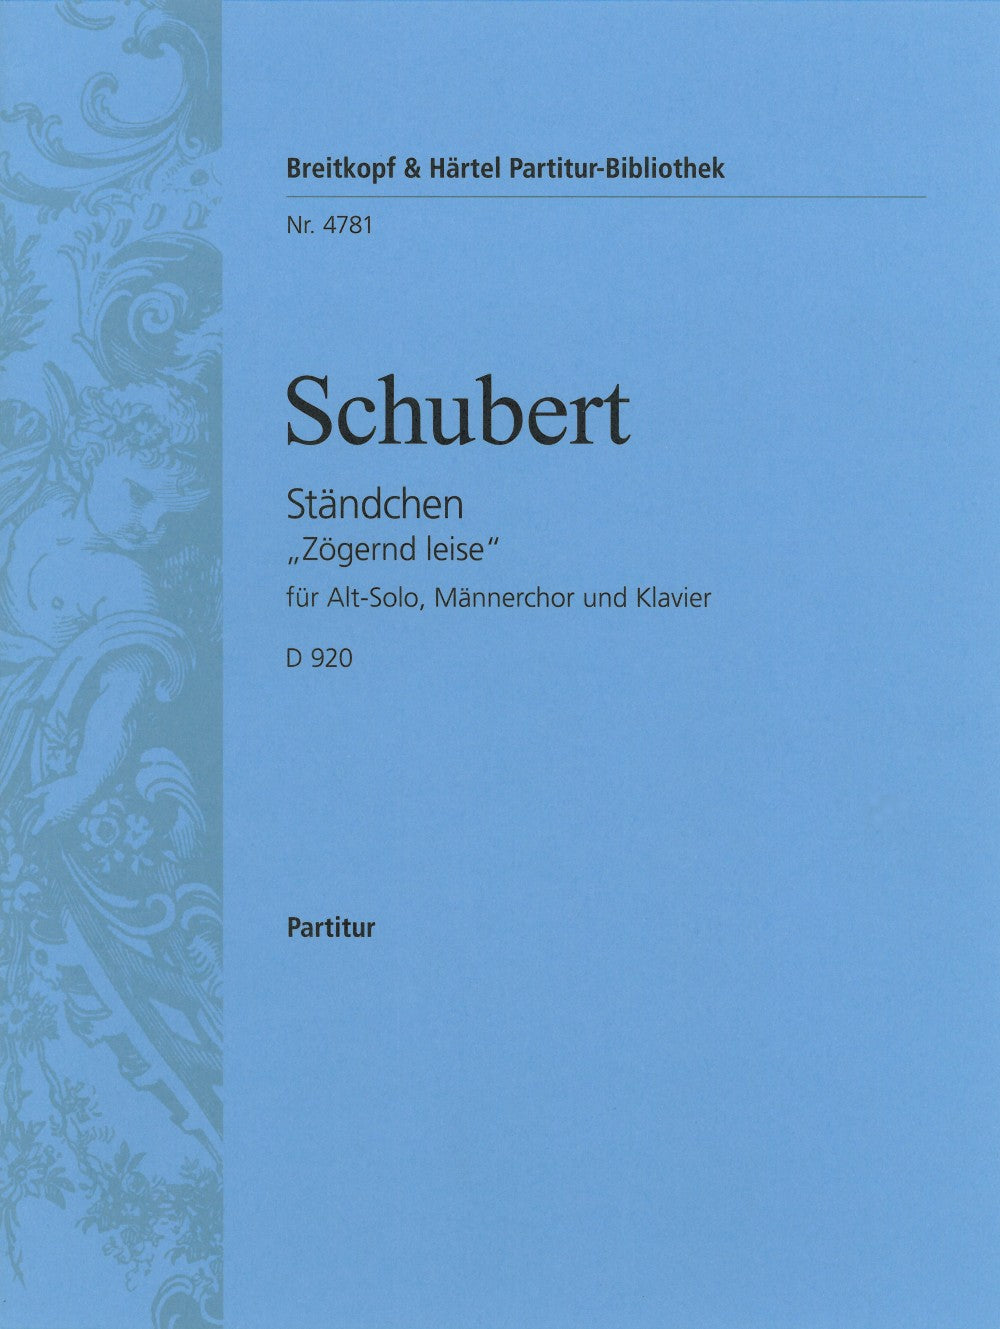 Schubert Staendchen D 920 [Opus post. 135]